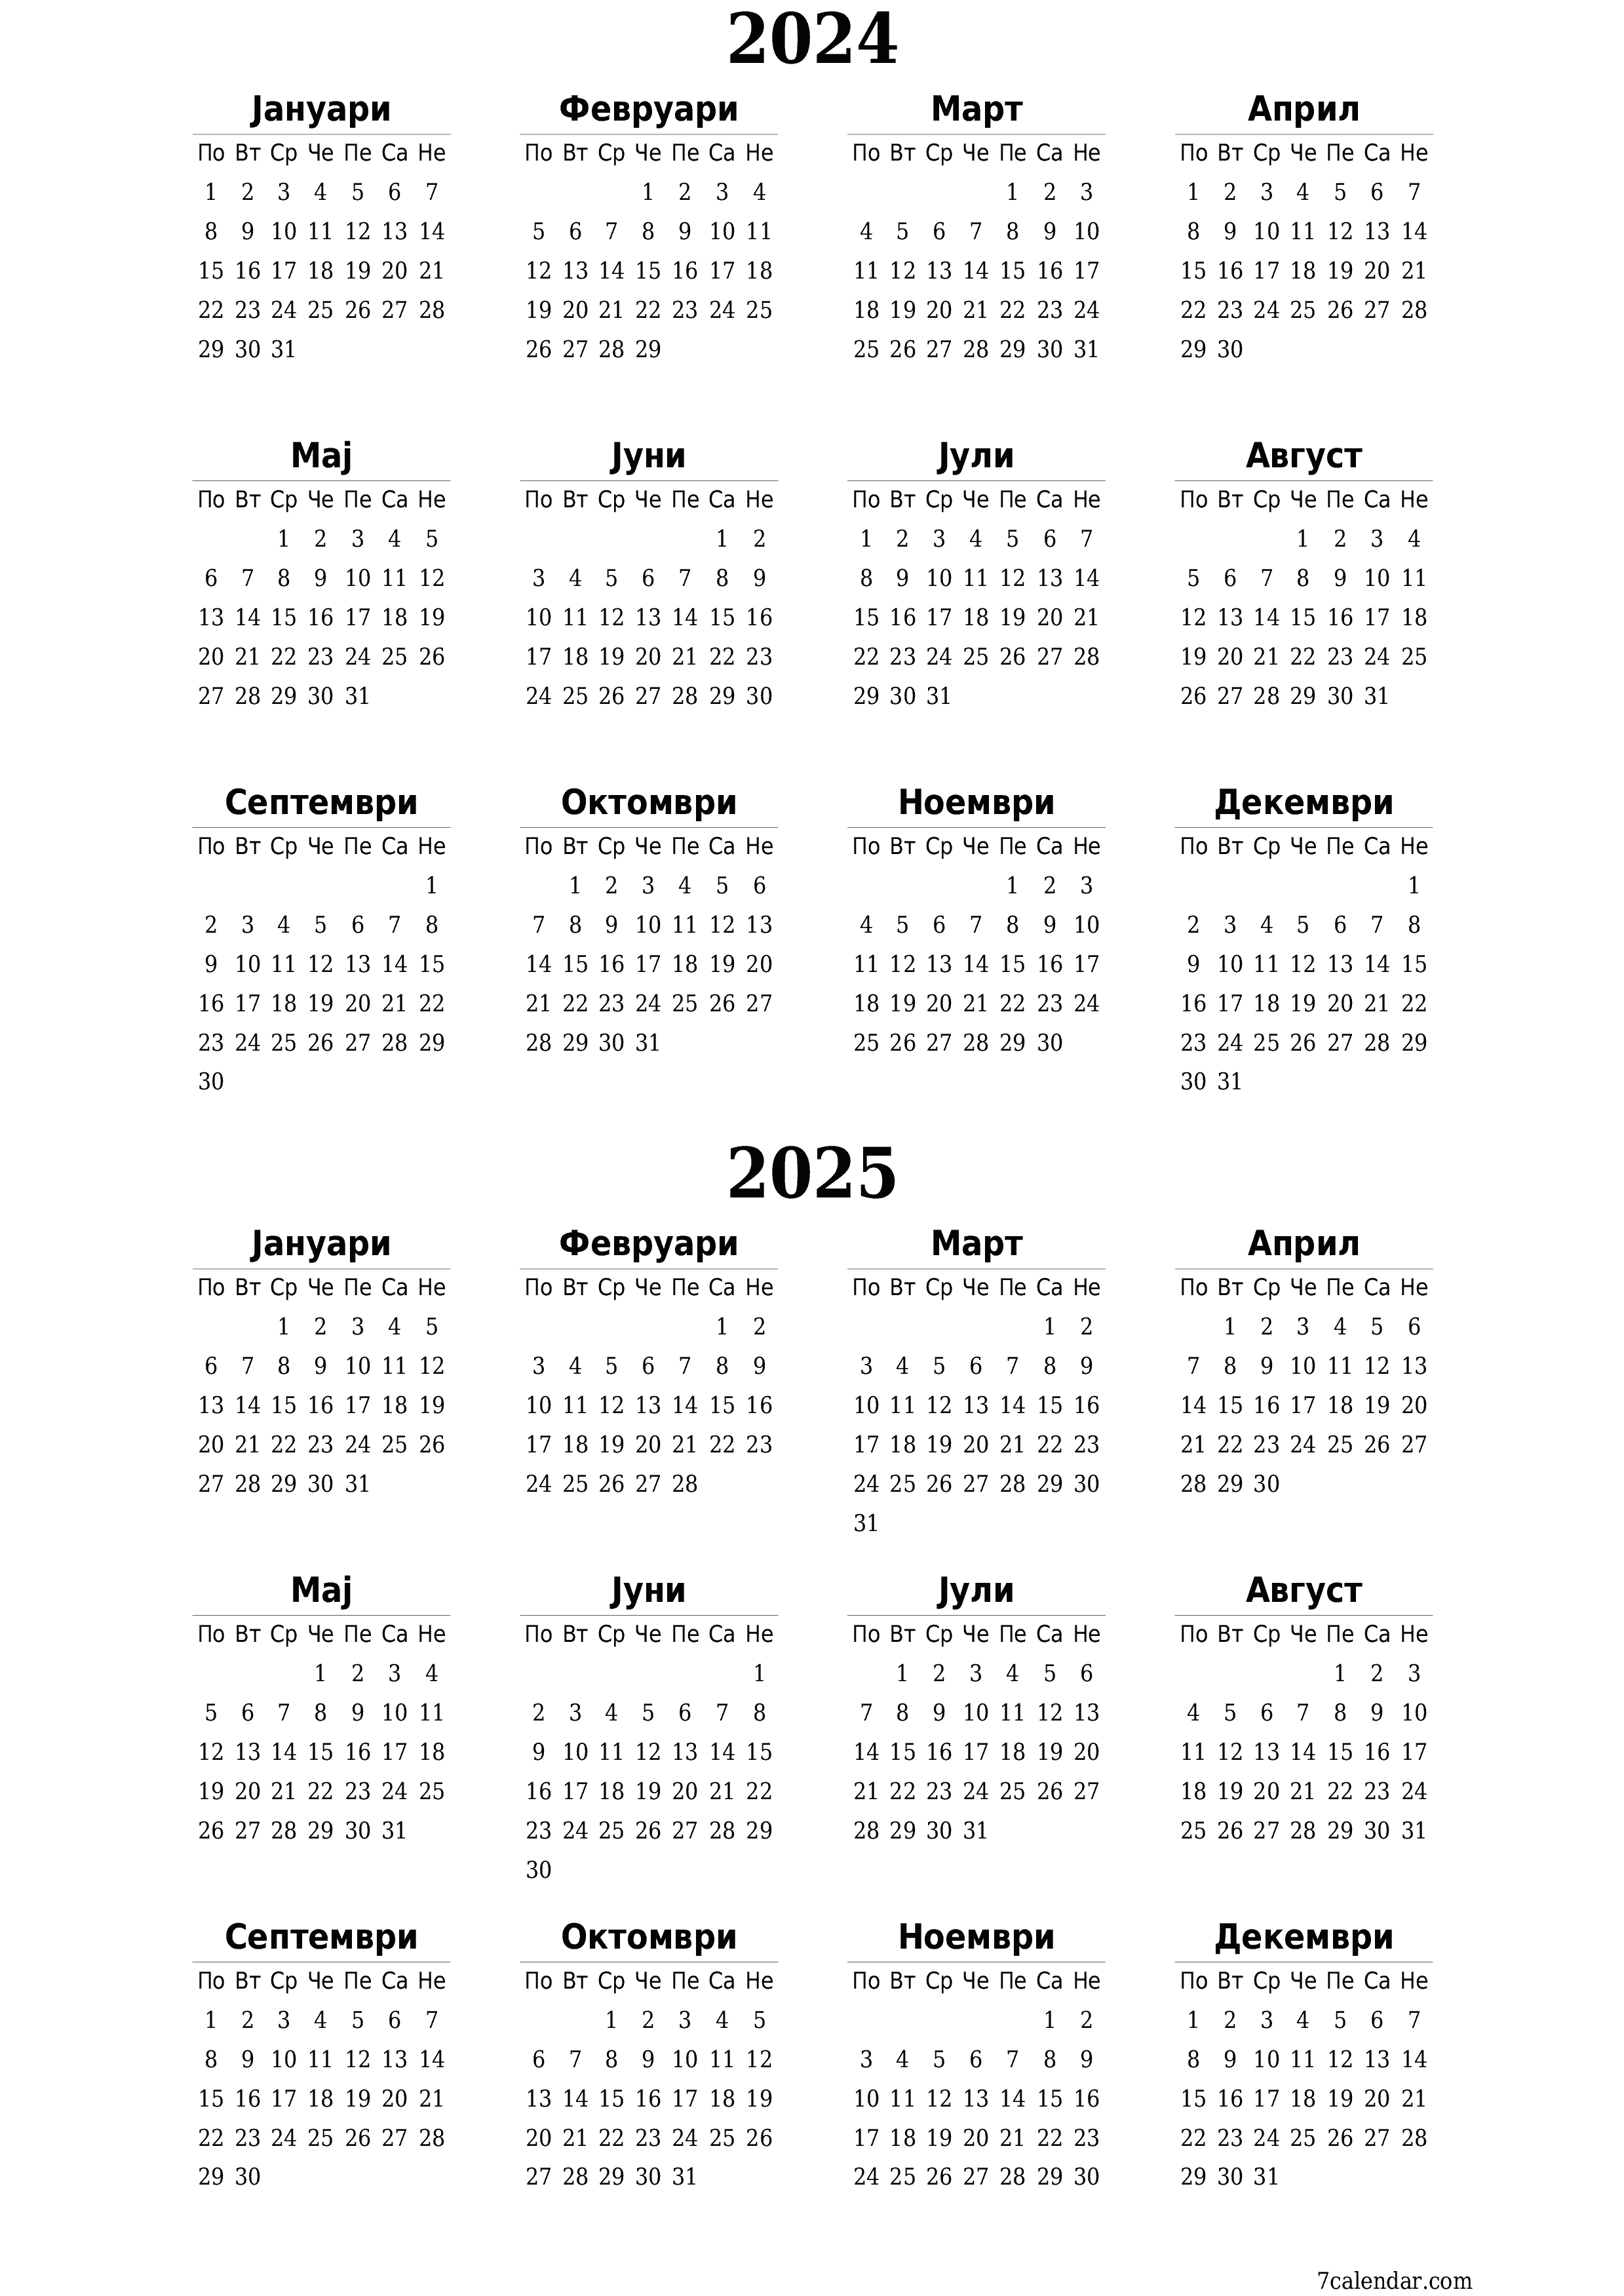  за печатење ѕиден шаблон за бесплатен вертикално Годишно календар Јануари (Јан) 2024